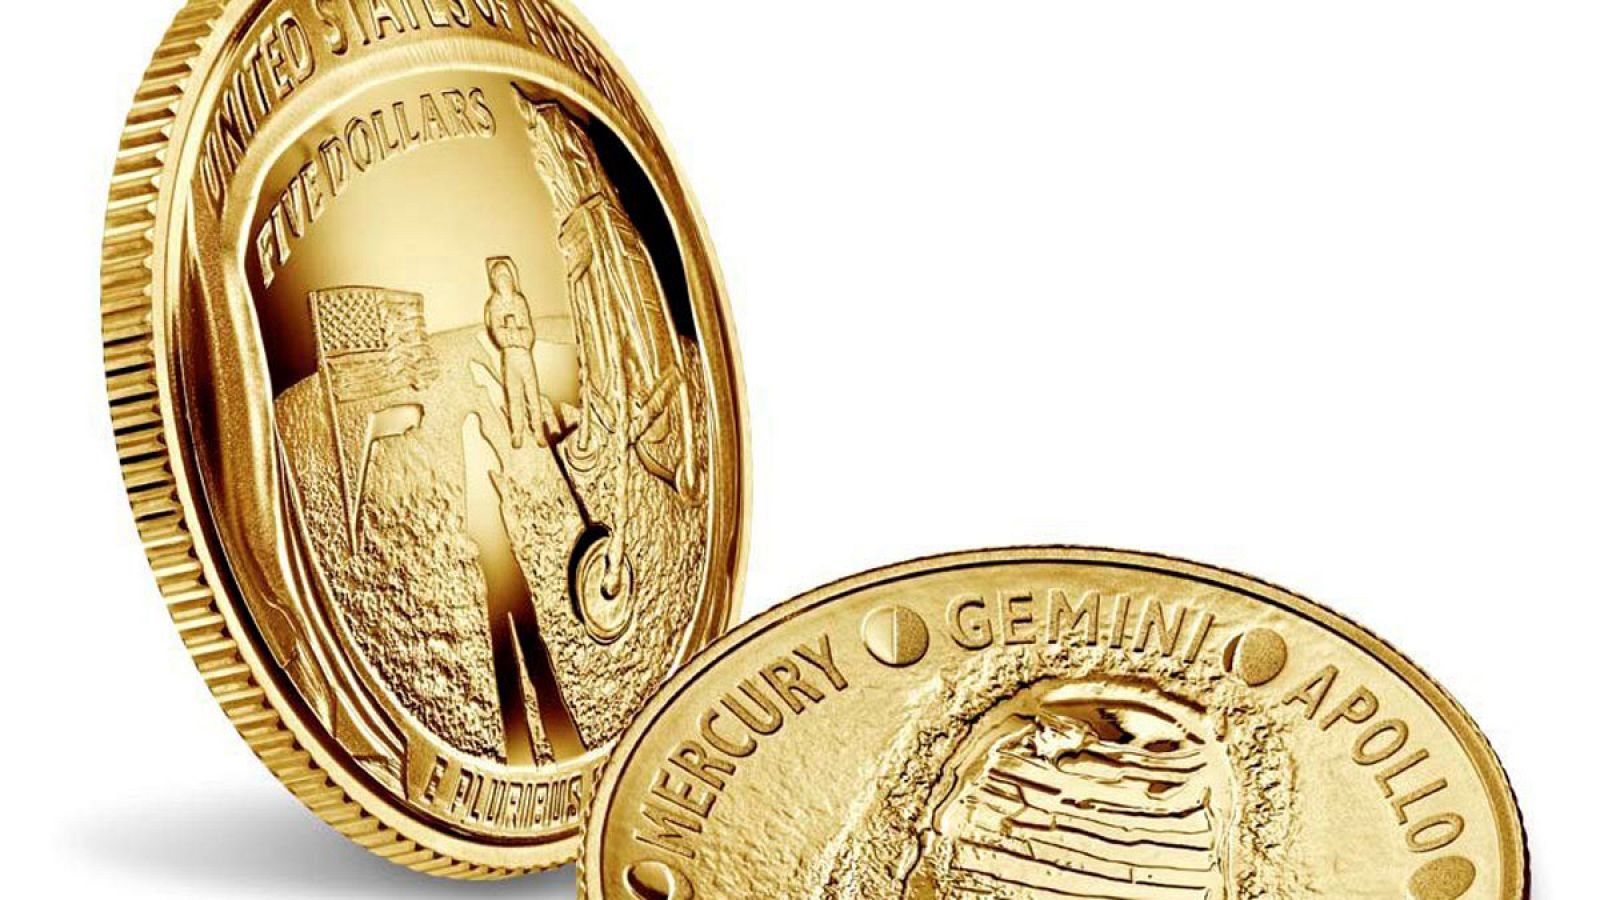 Fotografía cedida por la Casa de Monedas estadounidense (US Mint) donde se aprecia el anverso y reverso de una moneda de oro de cinco (5) dólares que conmemora los 50 años de la llegada del hombre a la Luna.